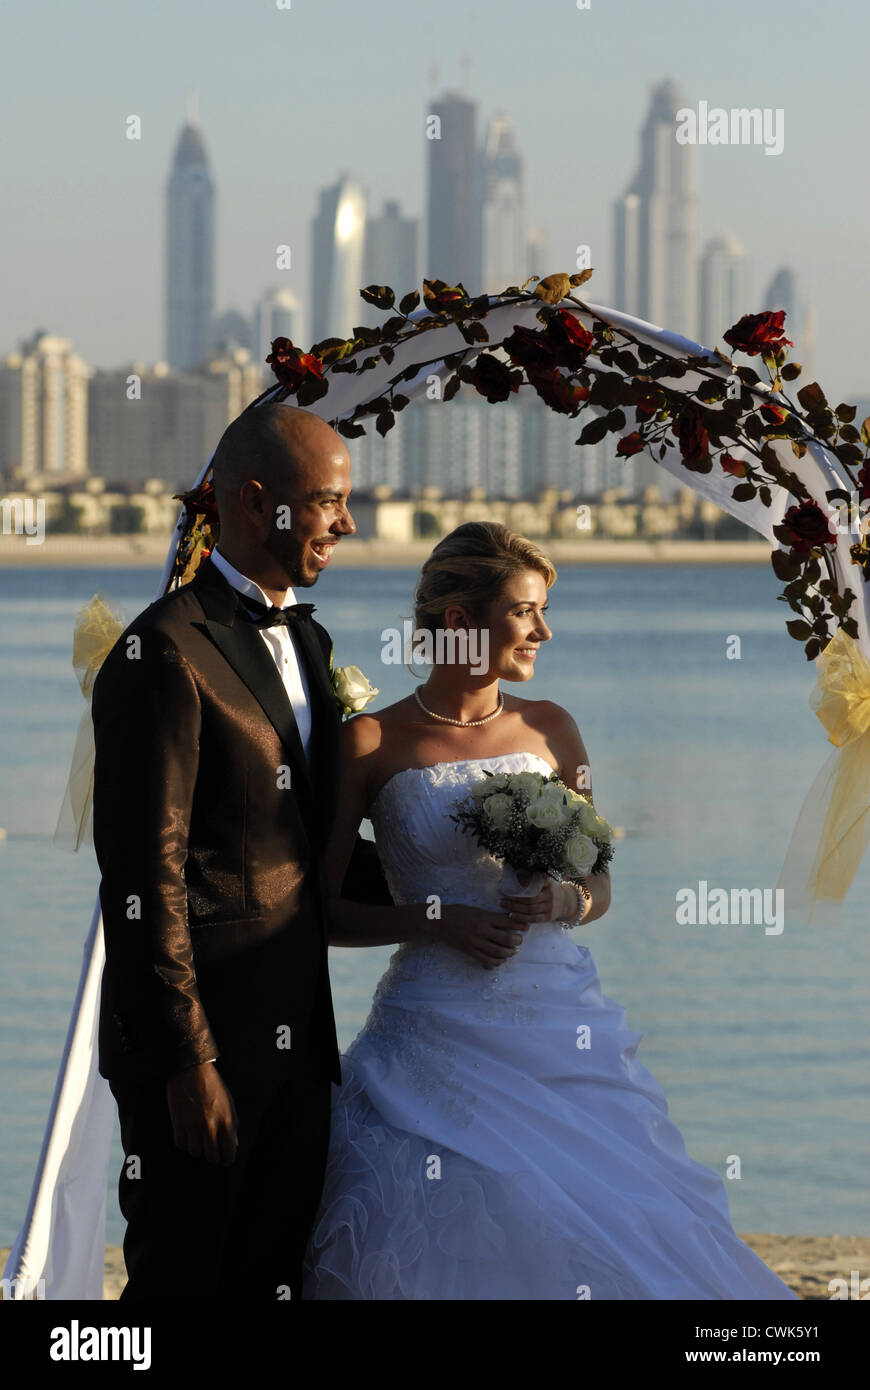 Mariage à l'Hôtel Atlantis, The Palm, DUBAÏ, ÉMIRATS ARABES UNIS, Émirats arabes unis, du golfe Persique, Péninsule Arabique, Asie. Banque D'Images